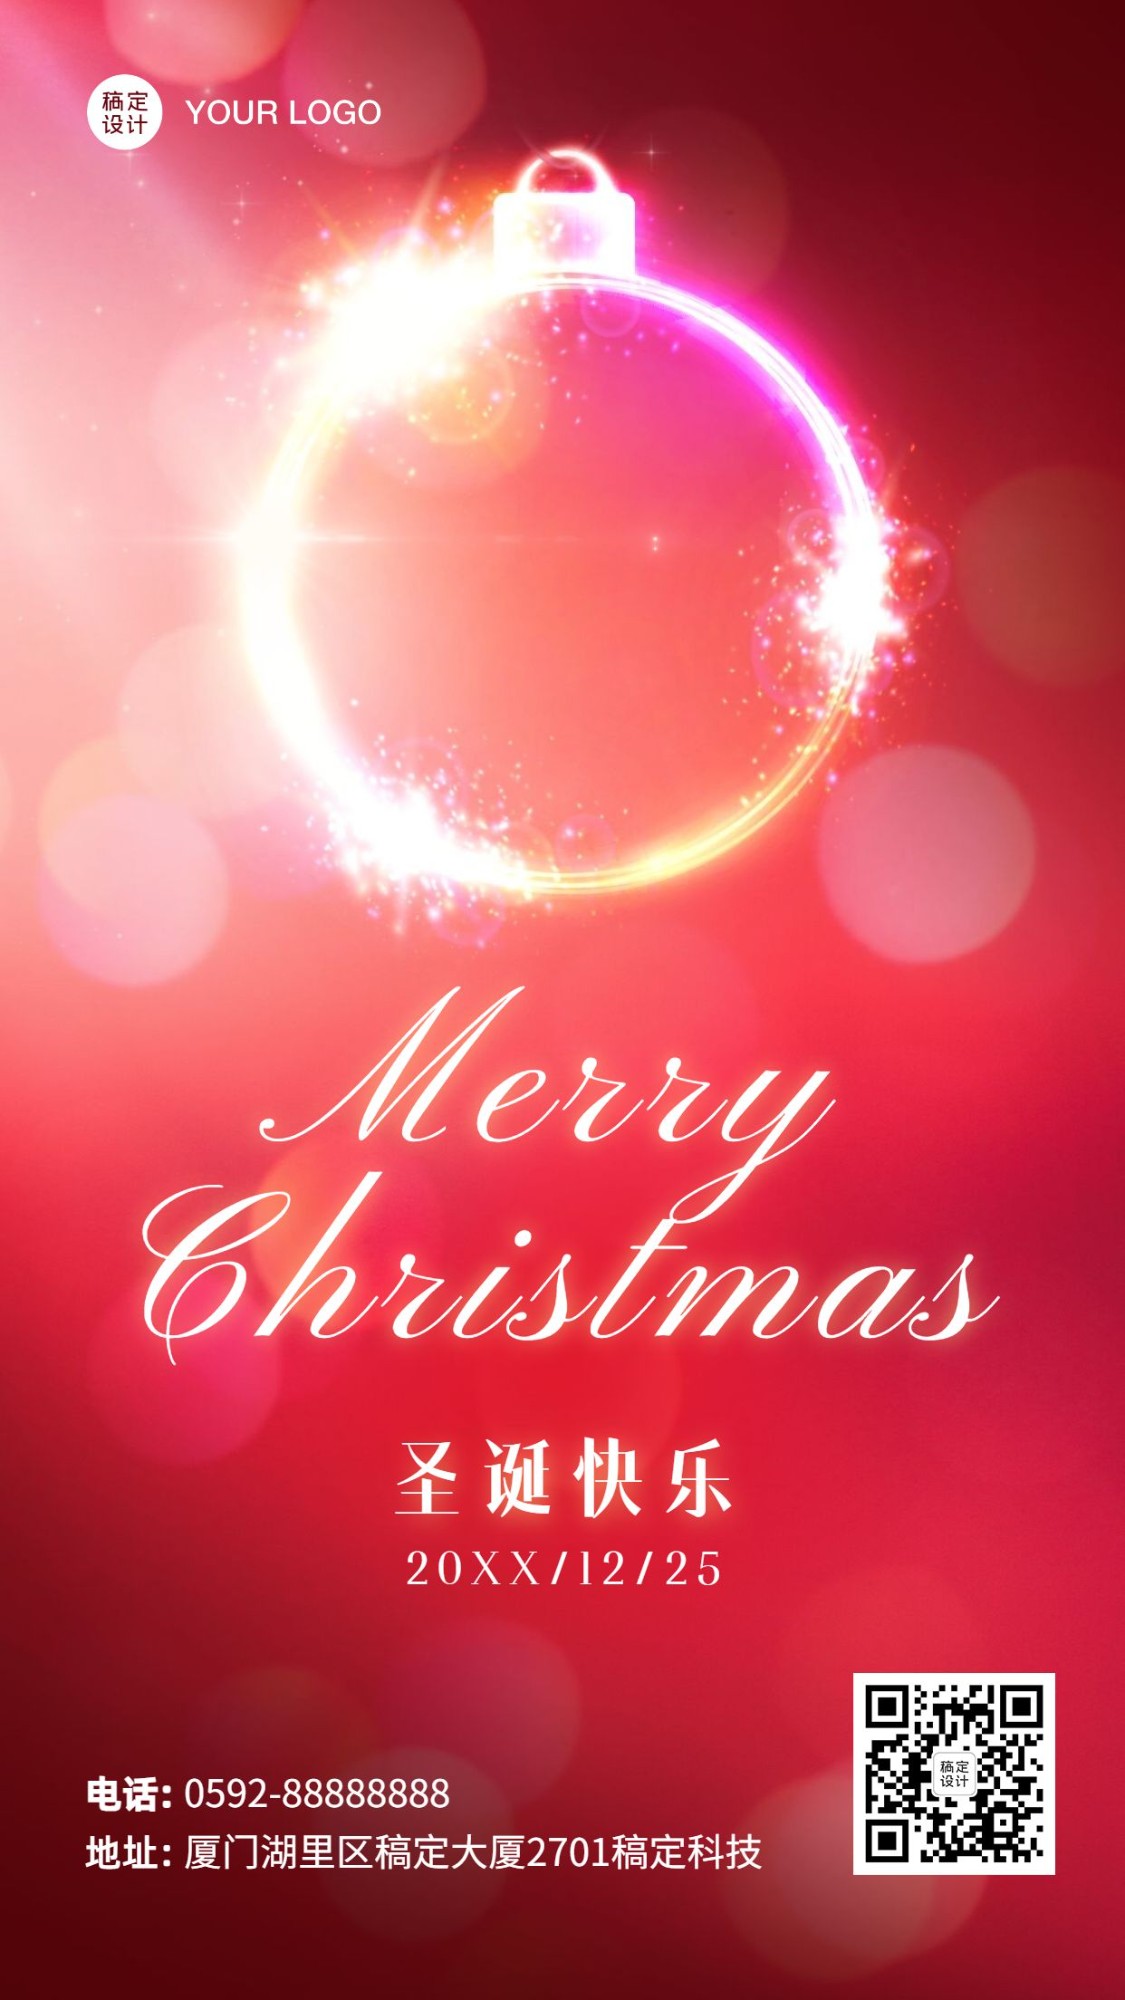 圣诞节平安快乐祝福创意手机海报